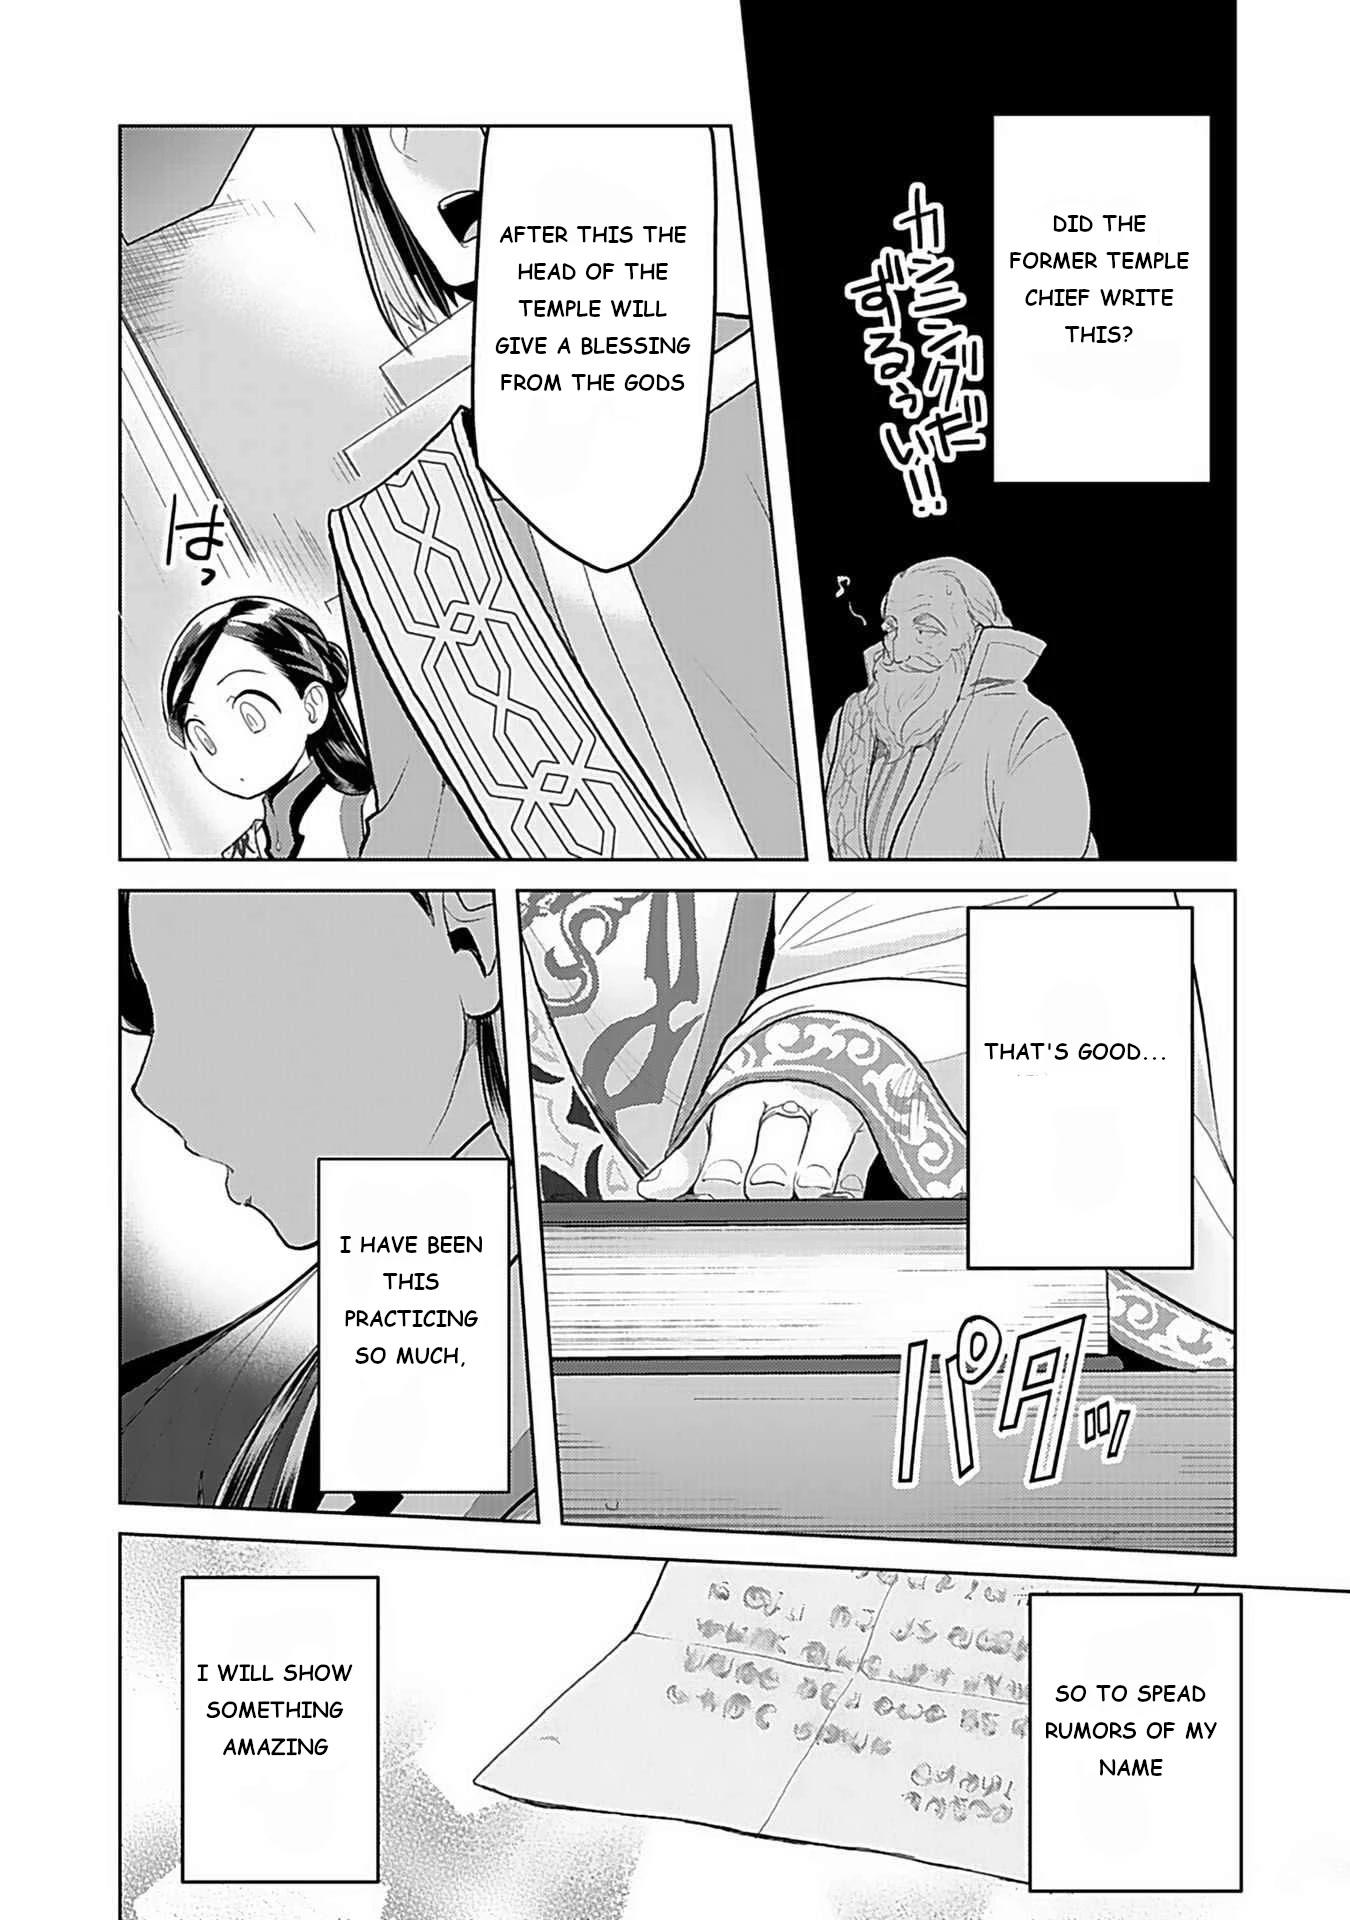 Honzuki no Gekokujou ~Shisho ni Naru Tame ni wa Shudan wo Erandeiraremasen~  Dai 3-bu 「Ryouchi ni Hon o Hirogeyou!」 Ch.3 Page 8 - Mangago